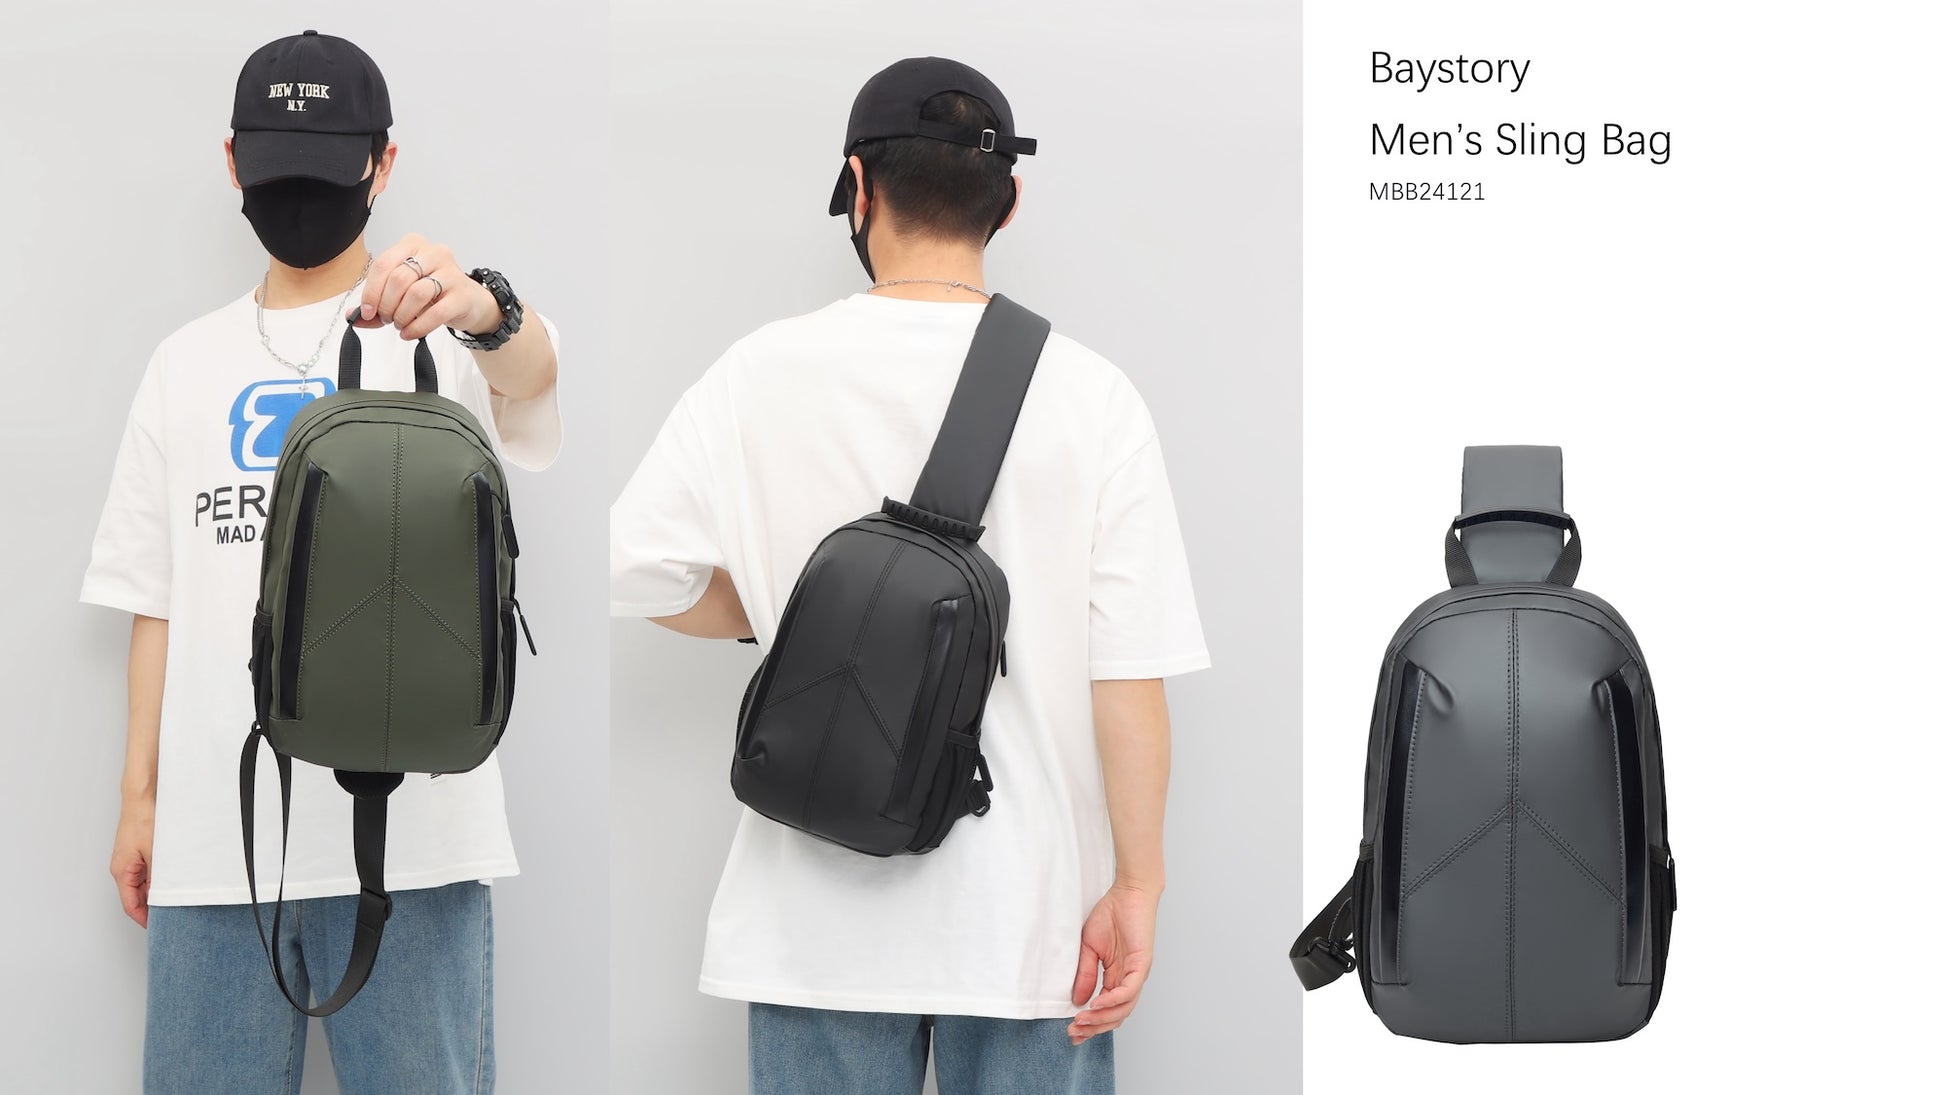 Baystory Men’s Sling Bag MBB24121 - Baystory